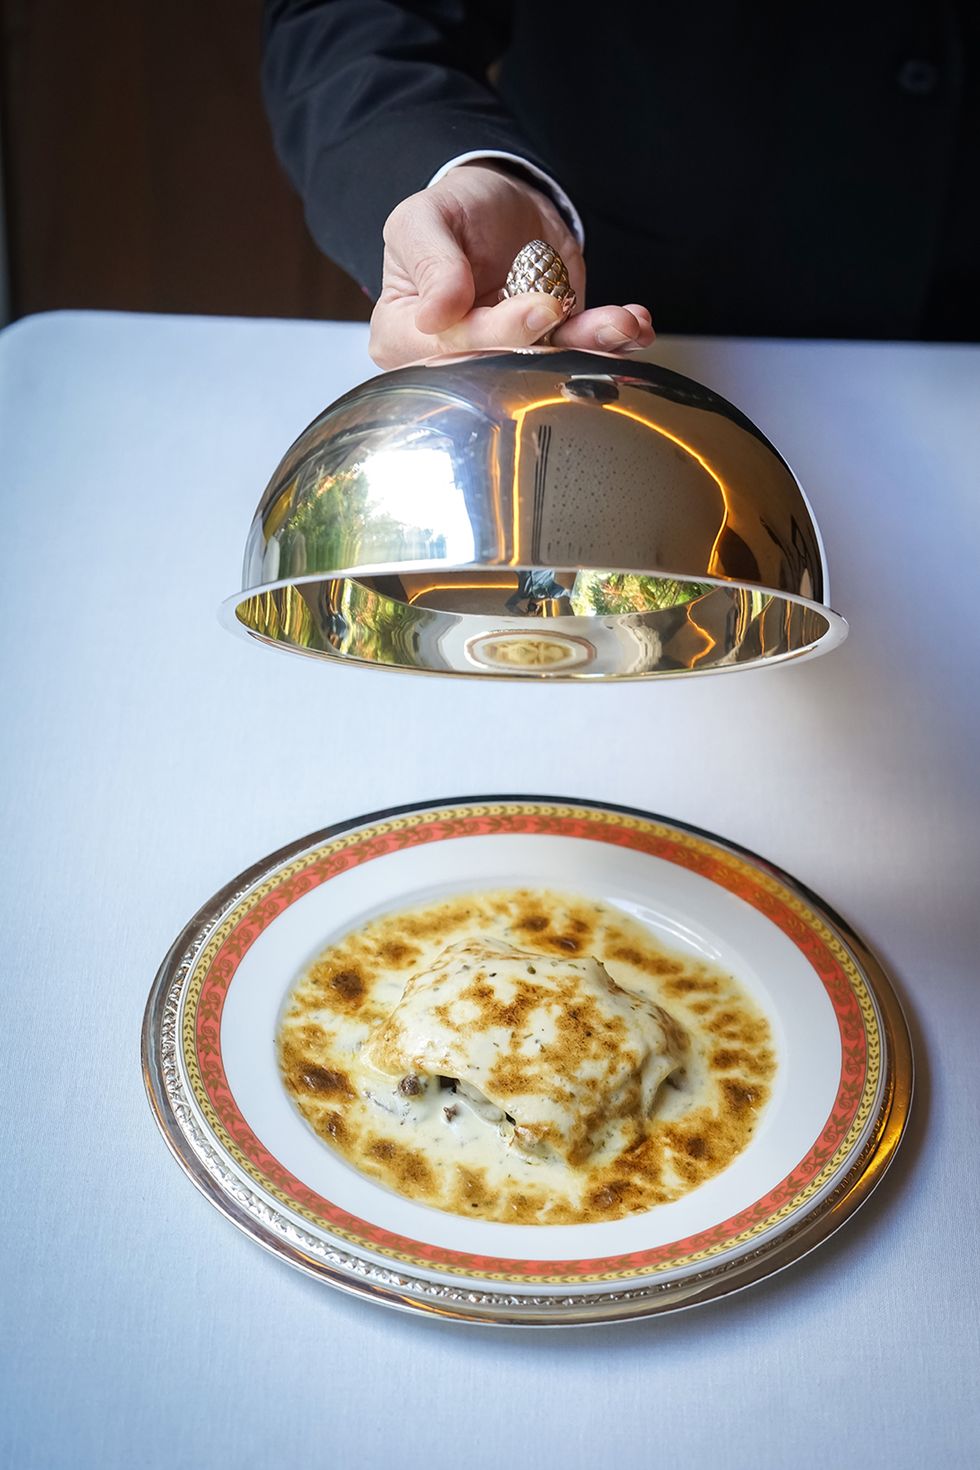 lasagna de hongos y foie gratinada al champagne, plato del restaurante zalacaín de madrid